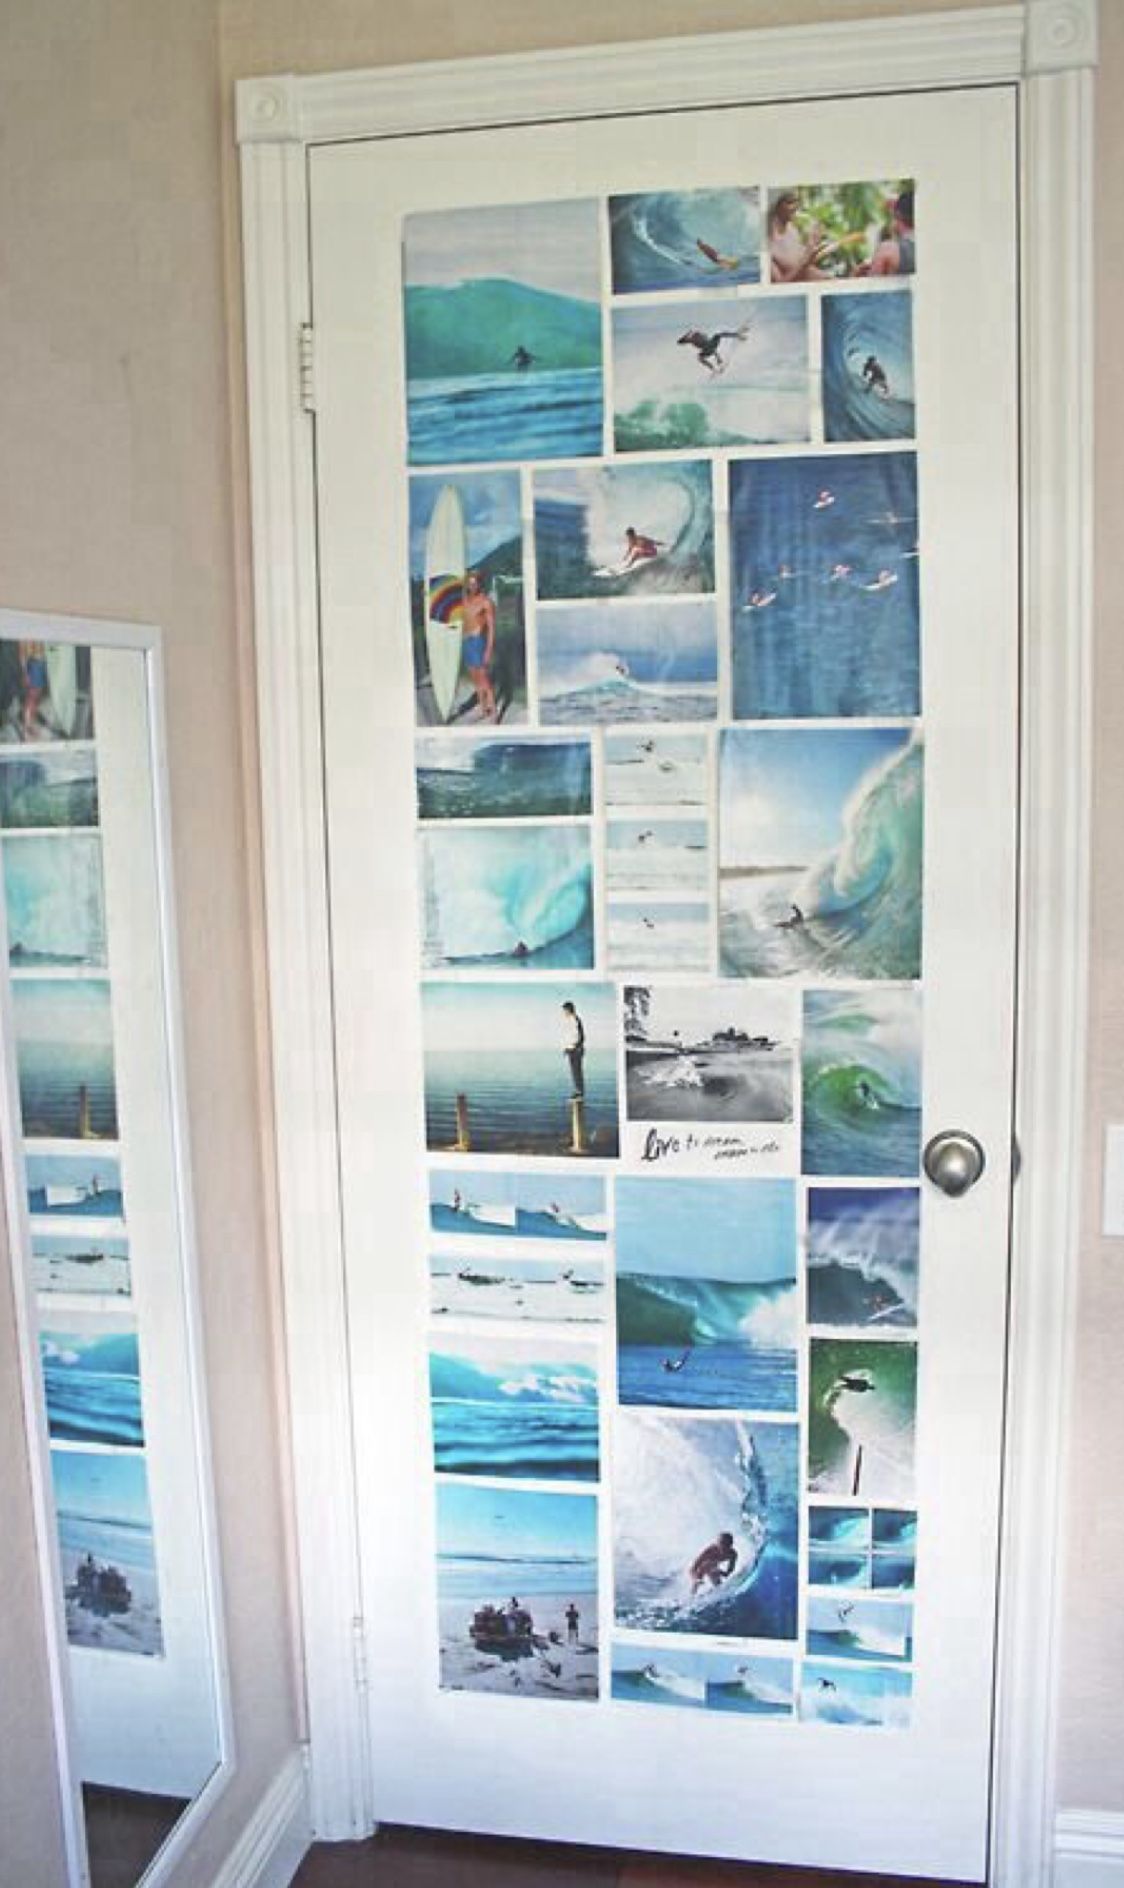 Surfer / Beach Bedroom Ideas - Surfer / Beach Bedroom Ideas -   19 diy Room vsco ideas